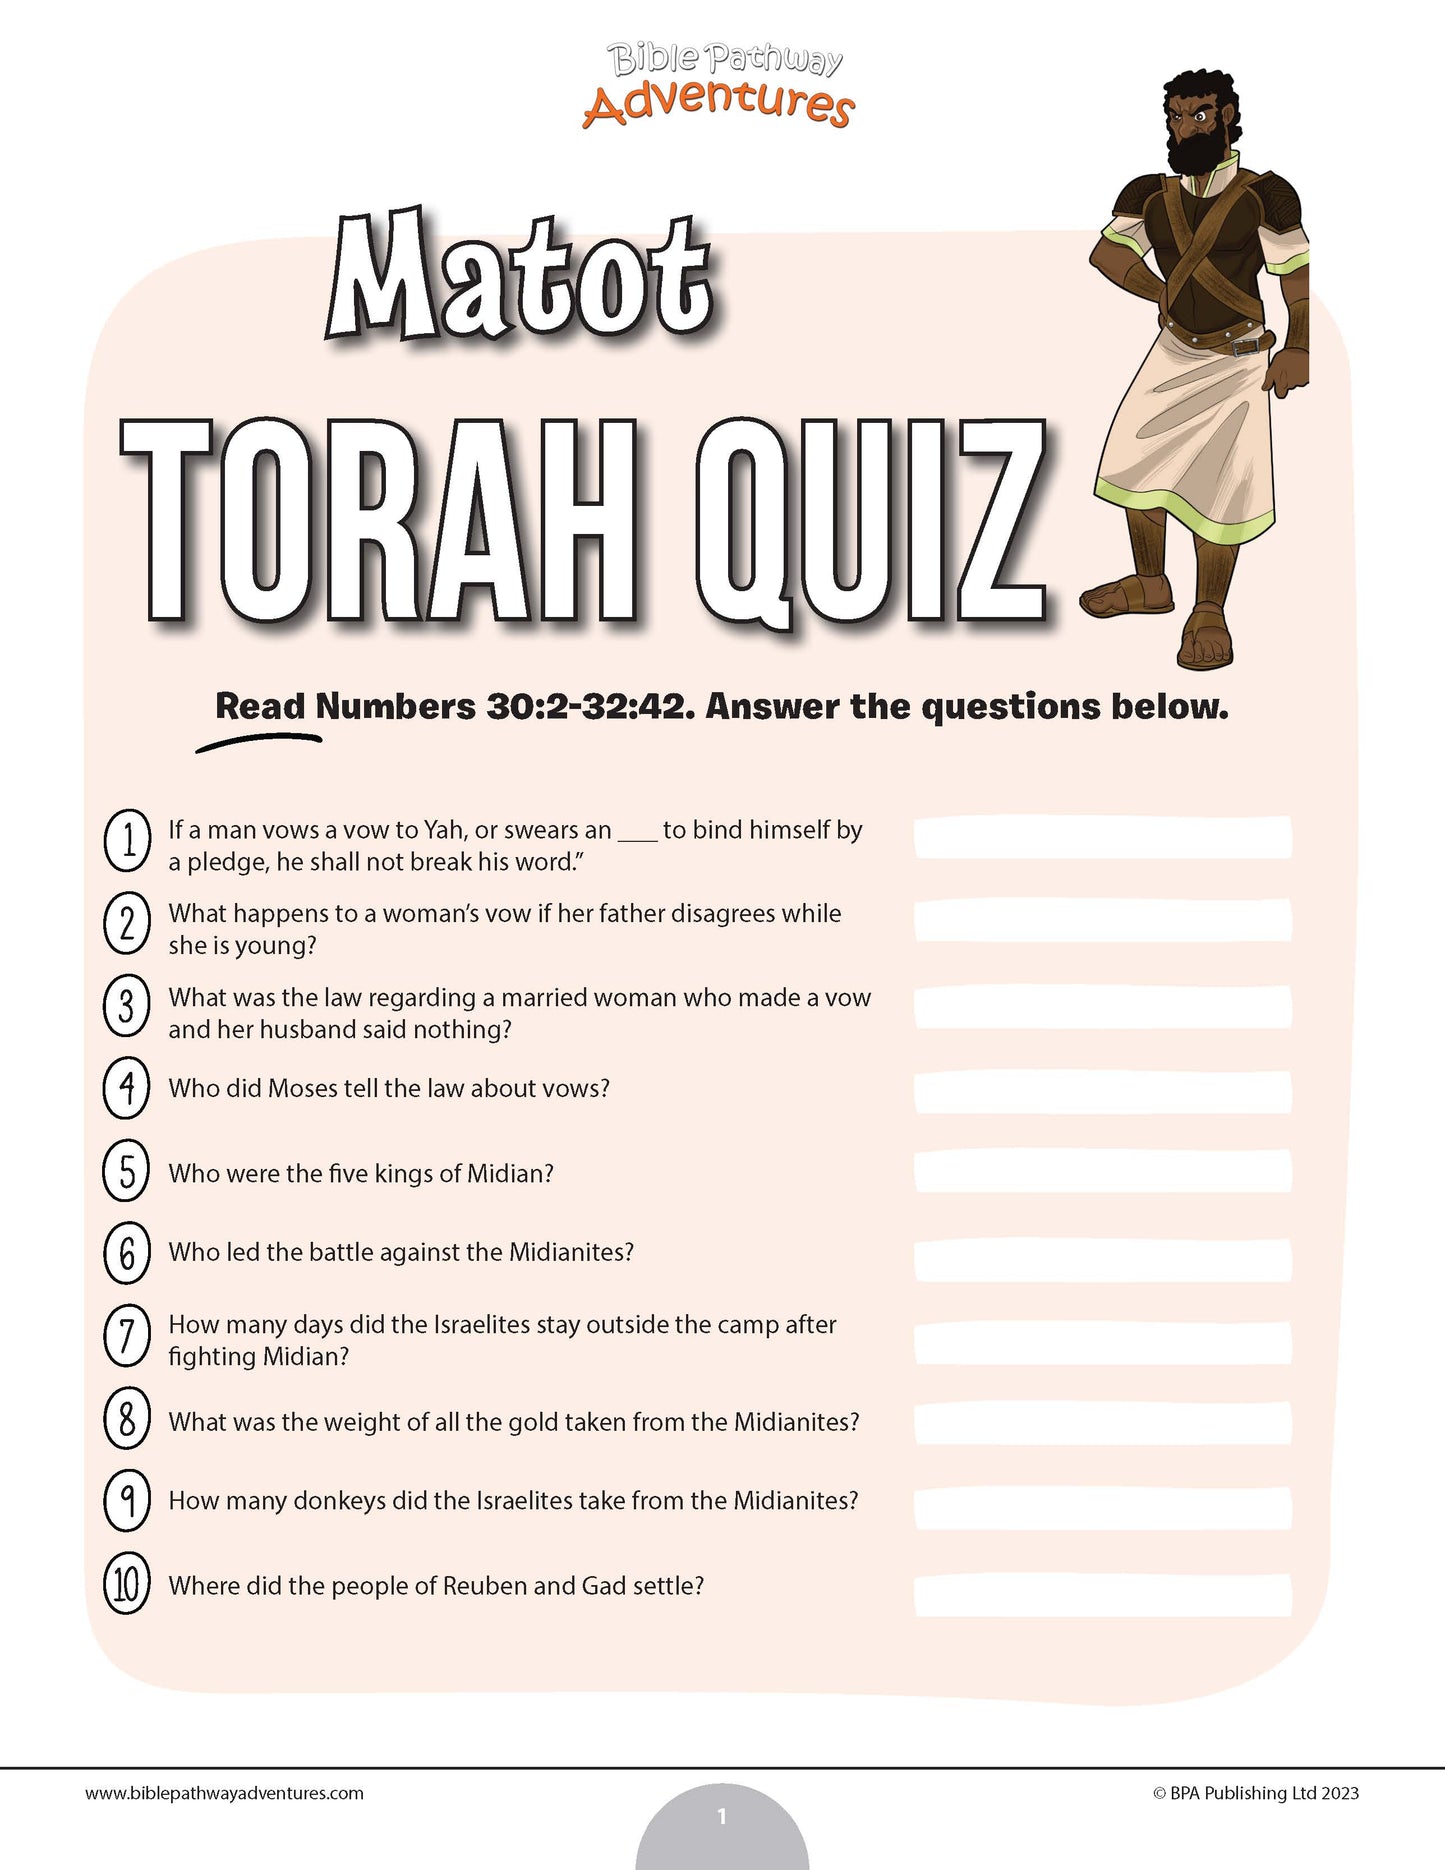 Matot Torah quiz